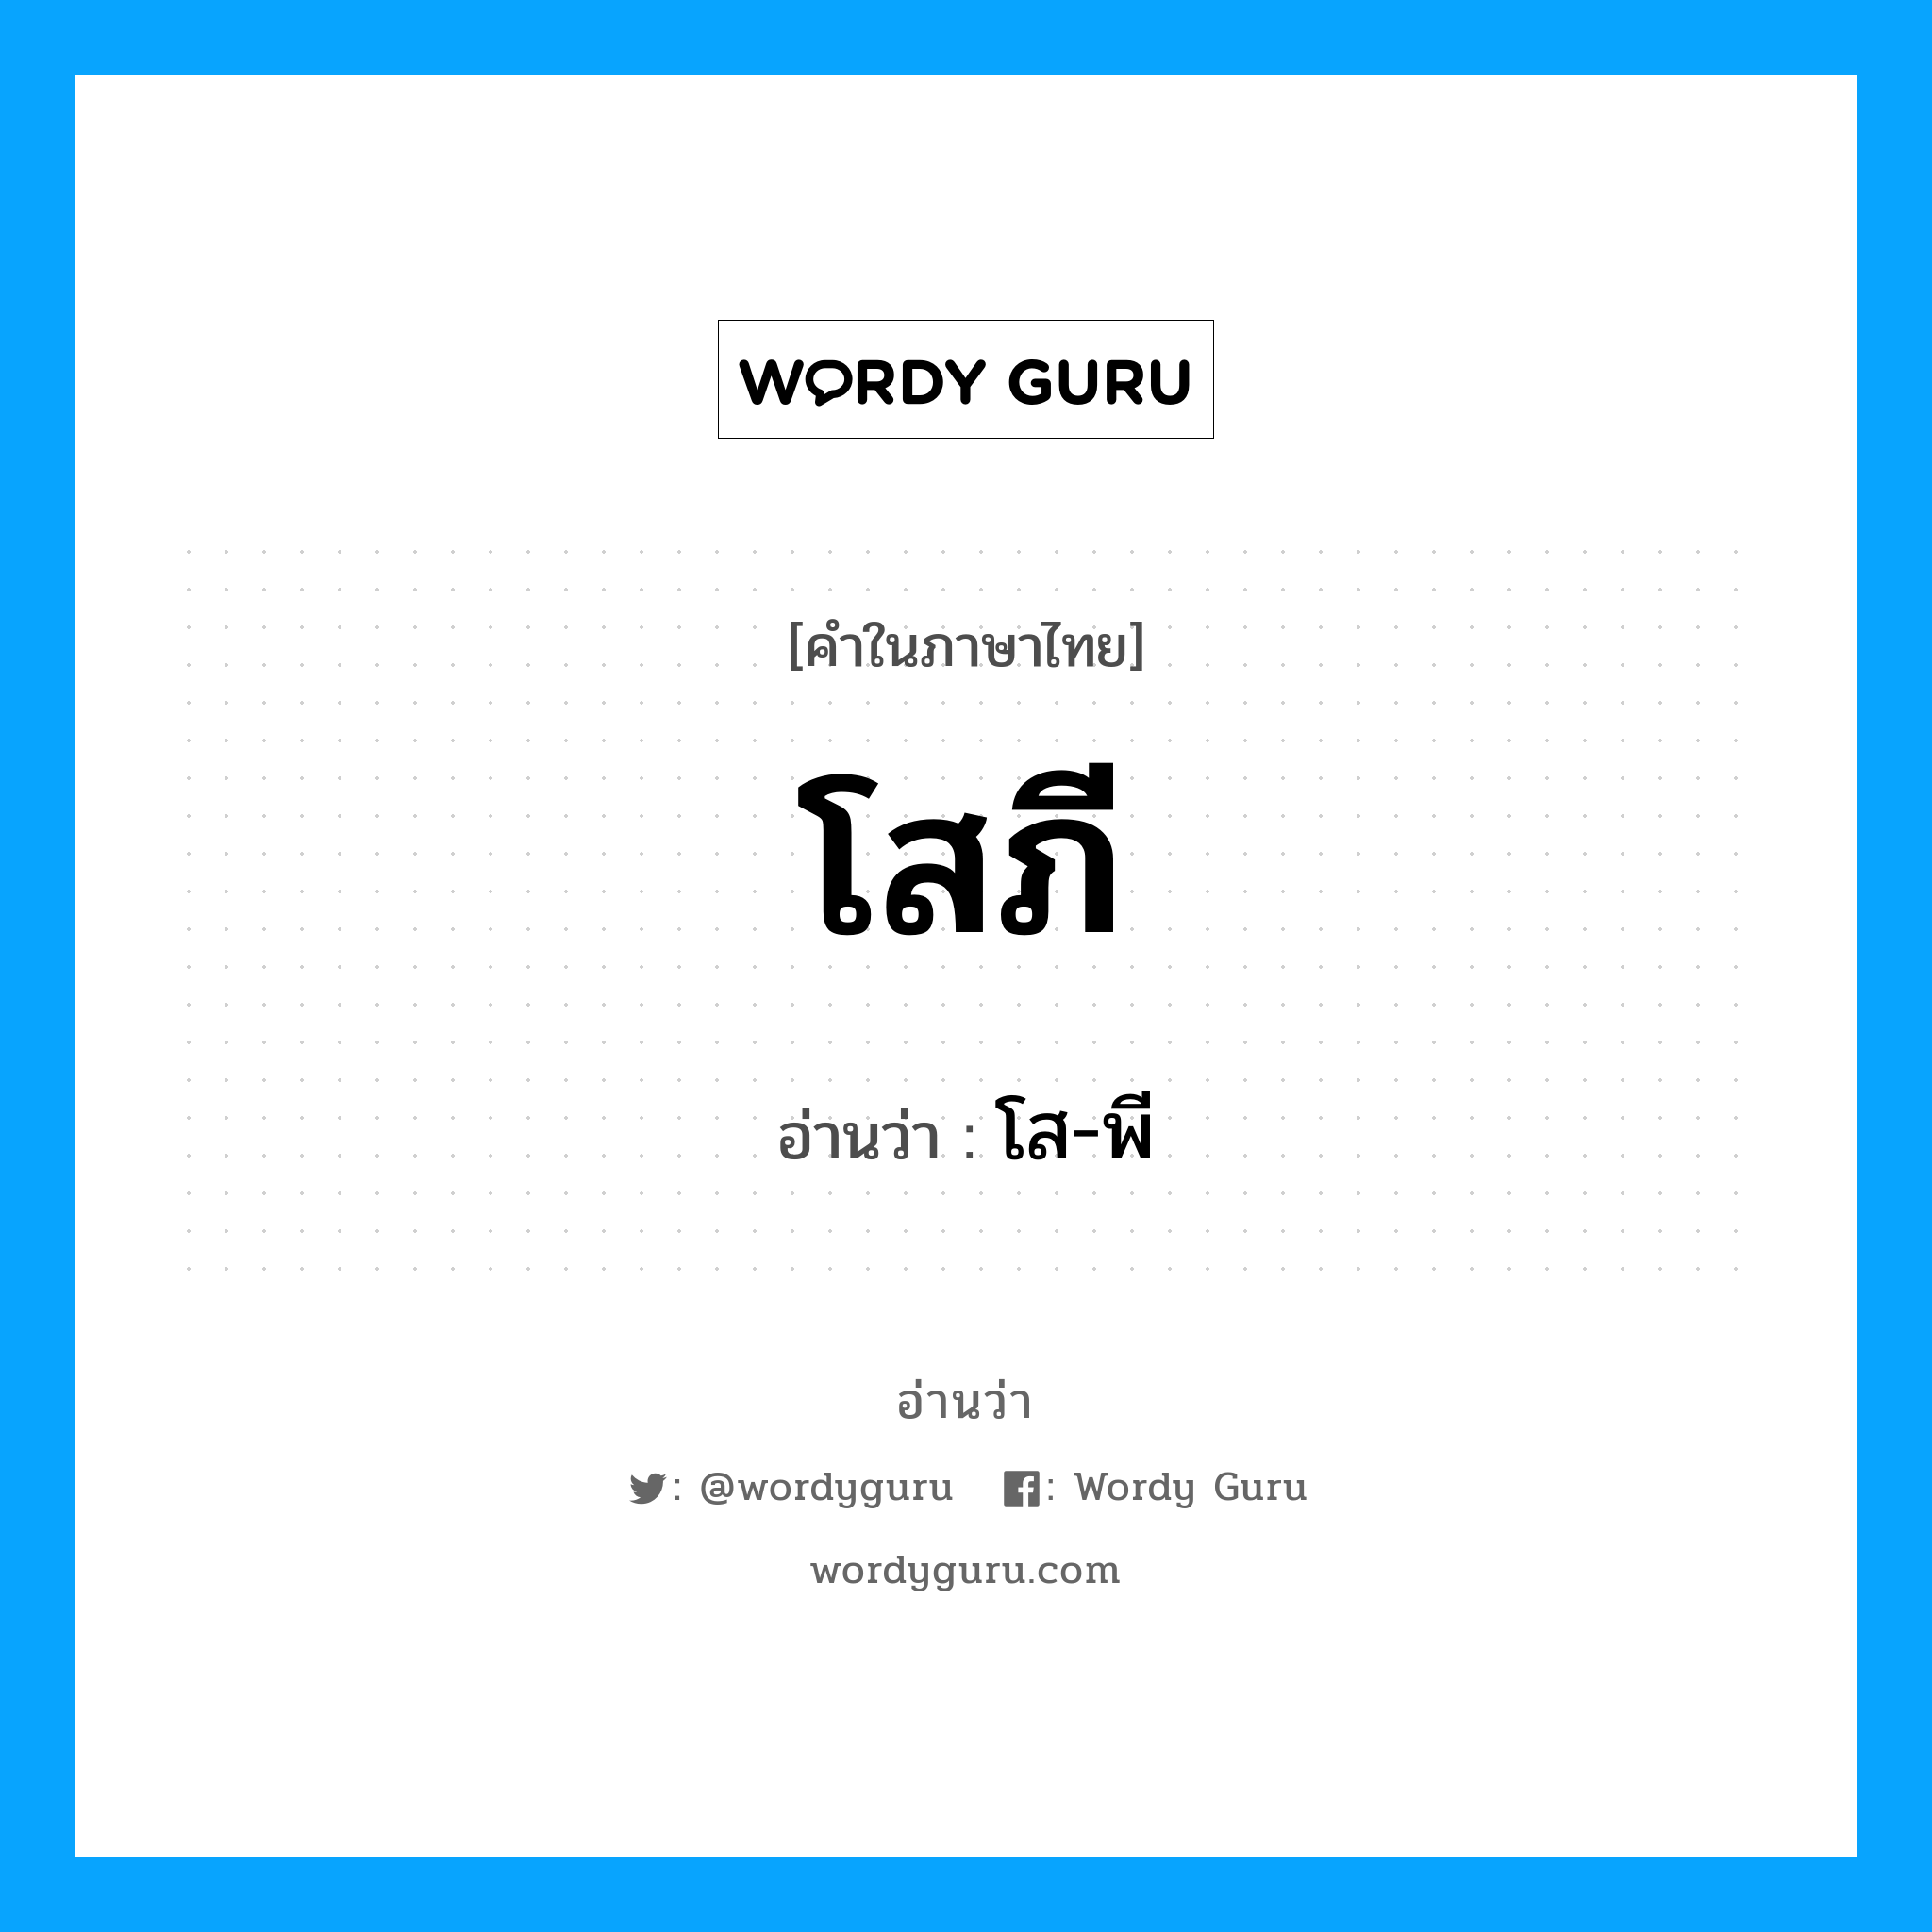 โส-พี เป็นคำอ่านของคำไหน?, คำในภาษาไทย โส-พี อ่านว่า โสภี